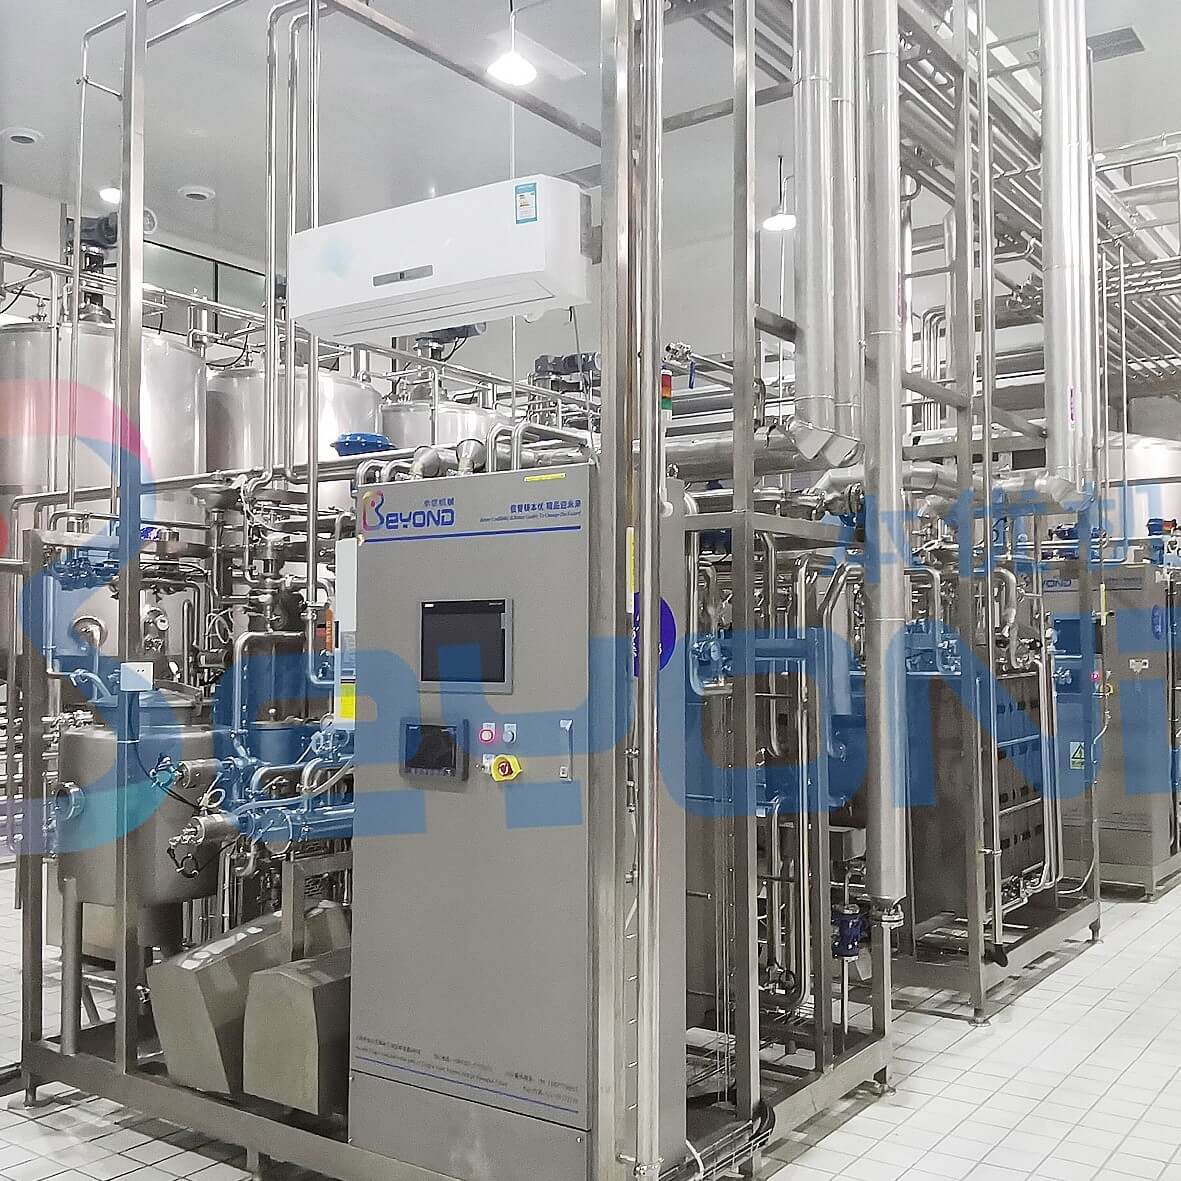 Pasteurized milk production line